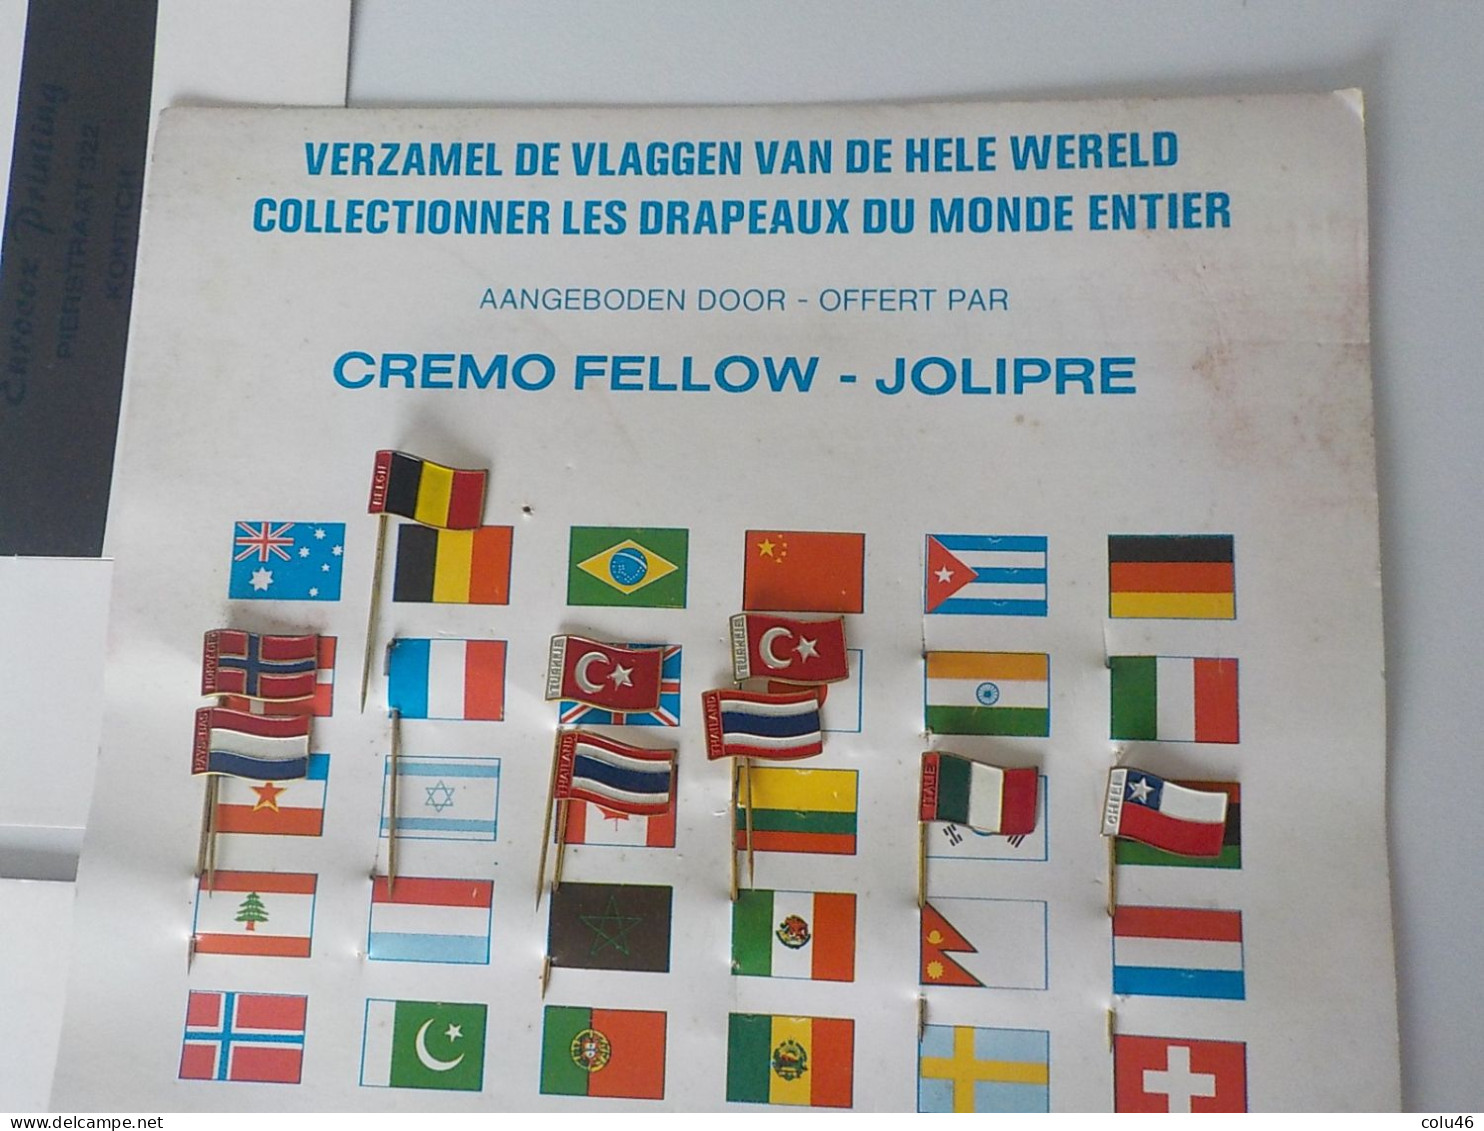 Collection de pinettes épinglettes Vintage drapeaux de tous pays Cremo Fellow cadeaux publicitaires alimentaires